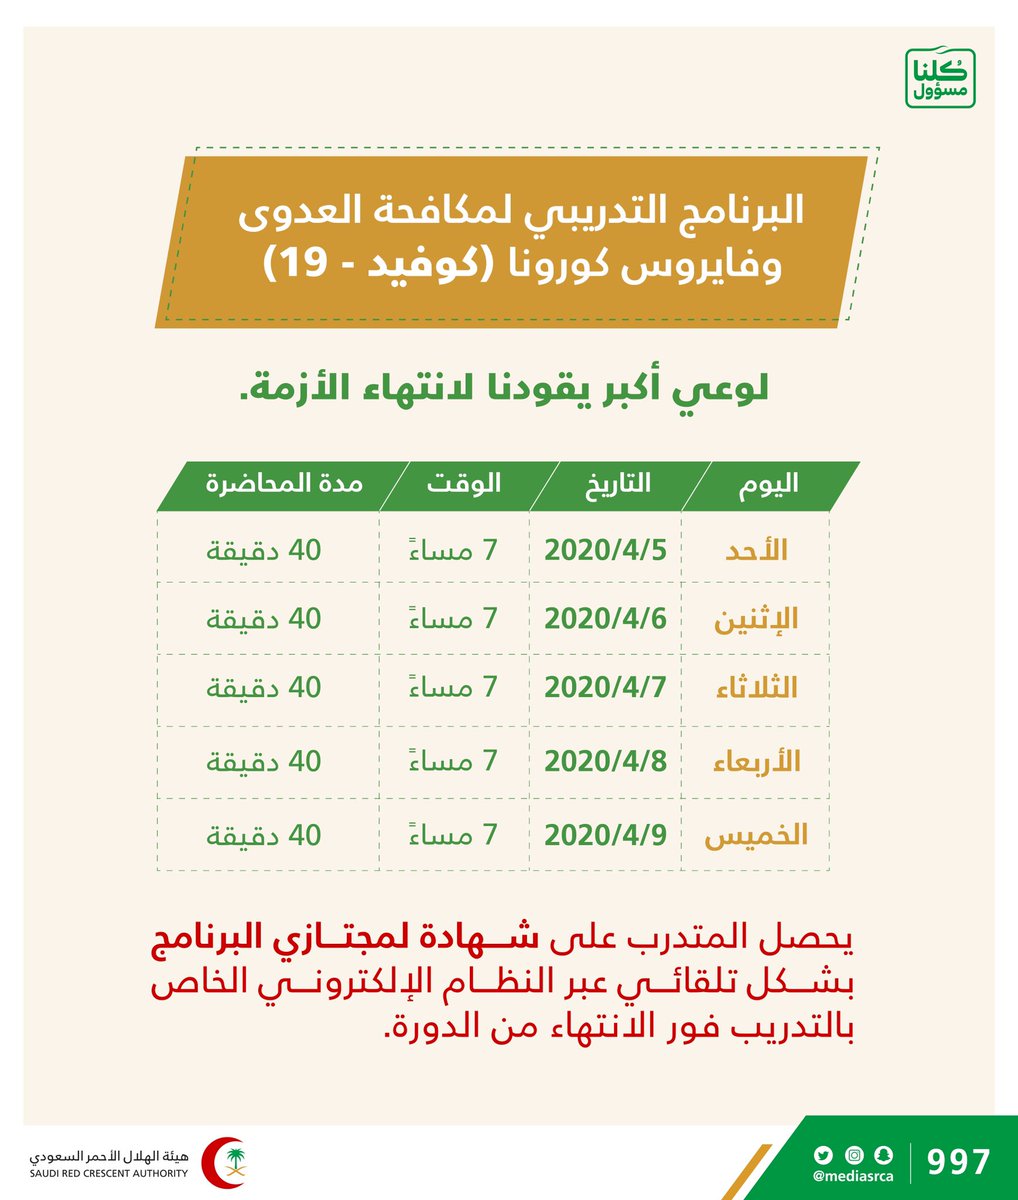 هيئة الهلال الأحمر السعودي On Twitter كن واعيا وشارك في حضور الدورة التدريبية المجانية عن بعد للتسجيل على الرابط Https T Co Z1w99hvgy1